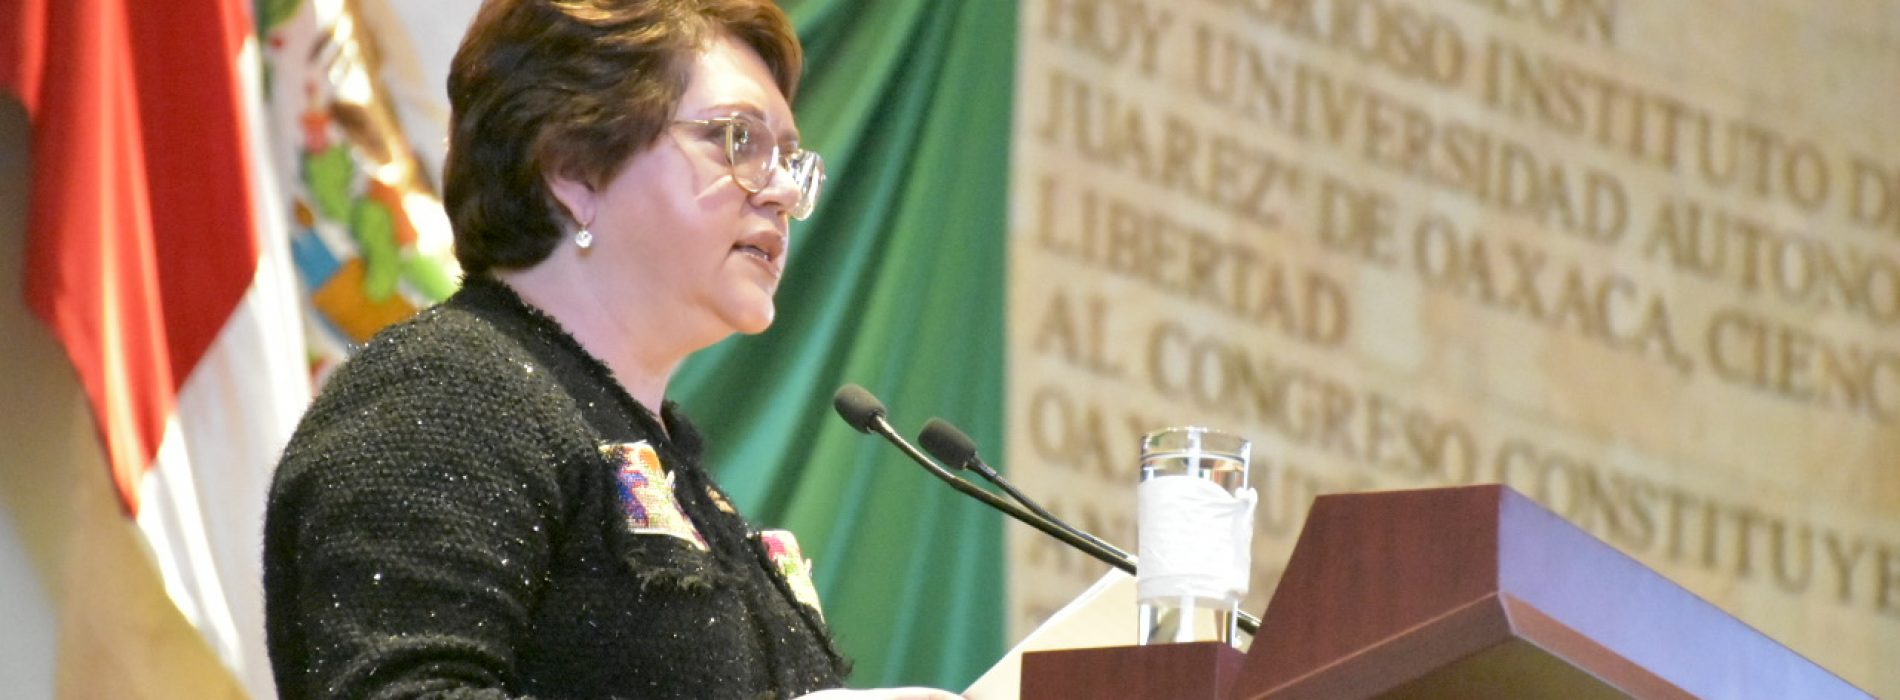 El derecho universal a la educación tiene que garantizarse para todos y todas por igual: Aurora López Acevedo